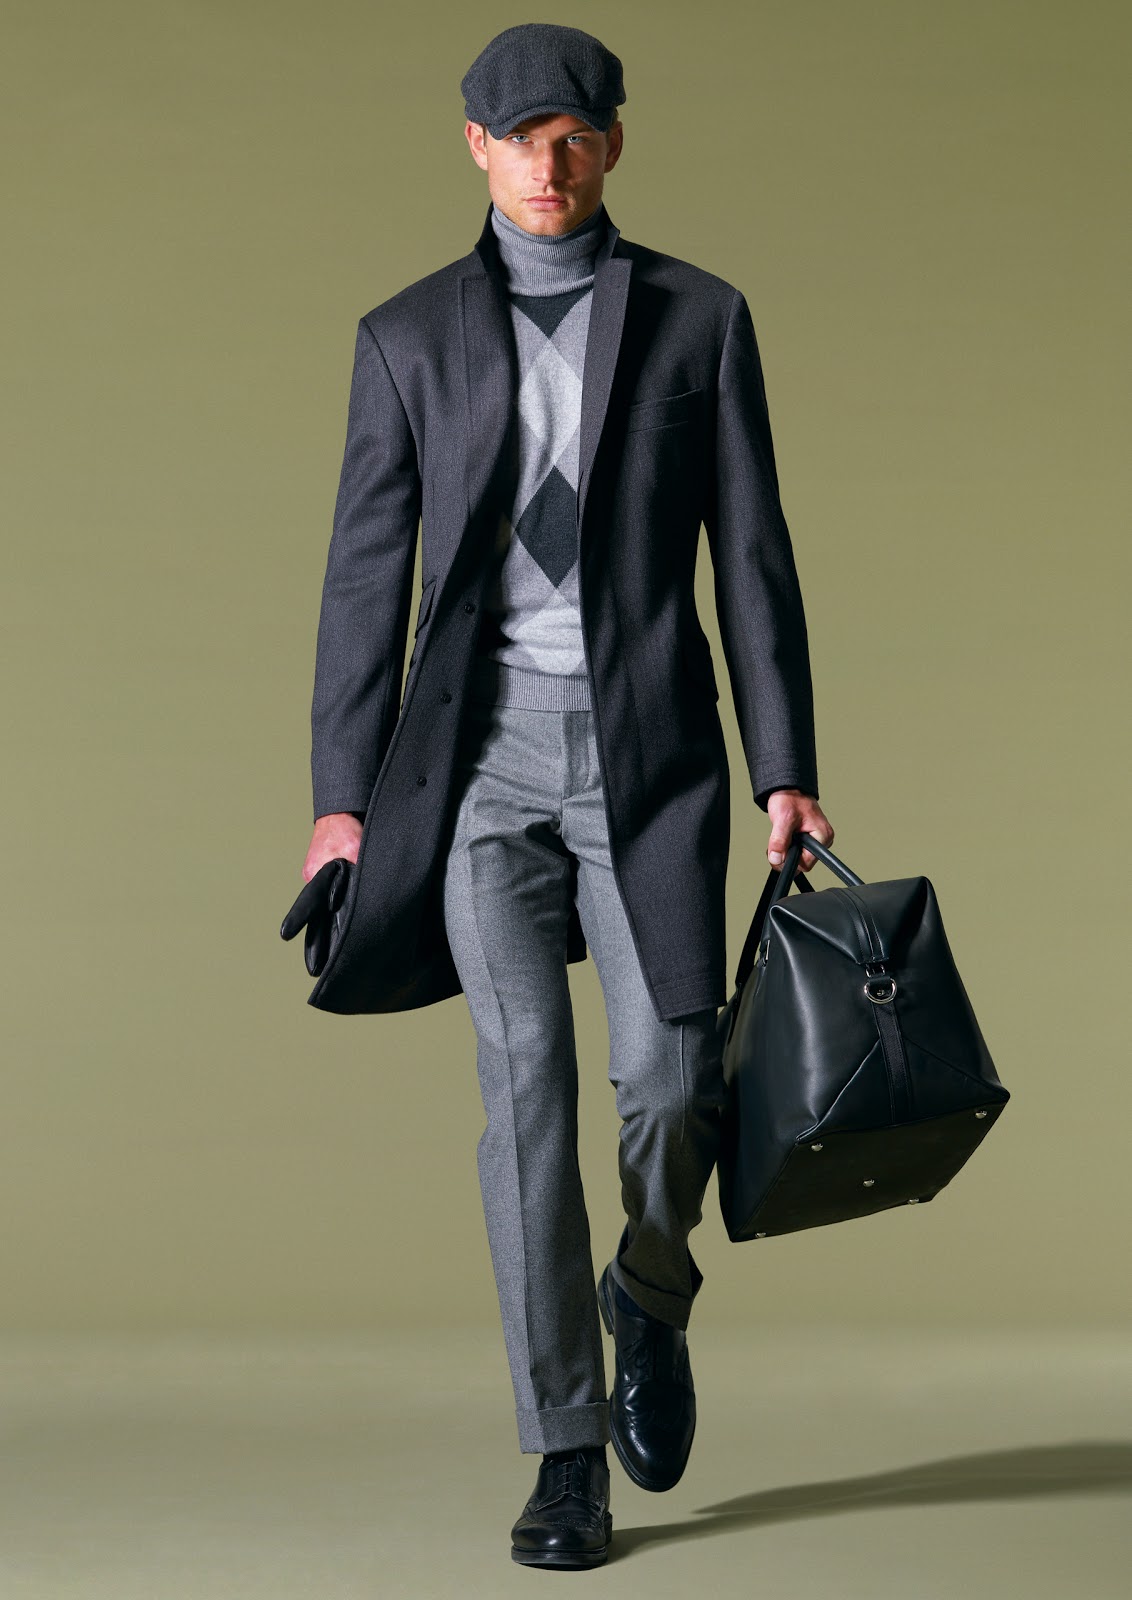 Compra hombres chaqueta de cuero gris online al por mayor